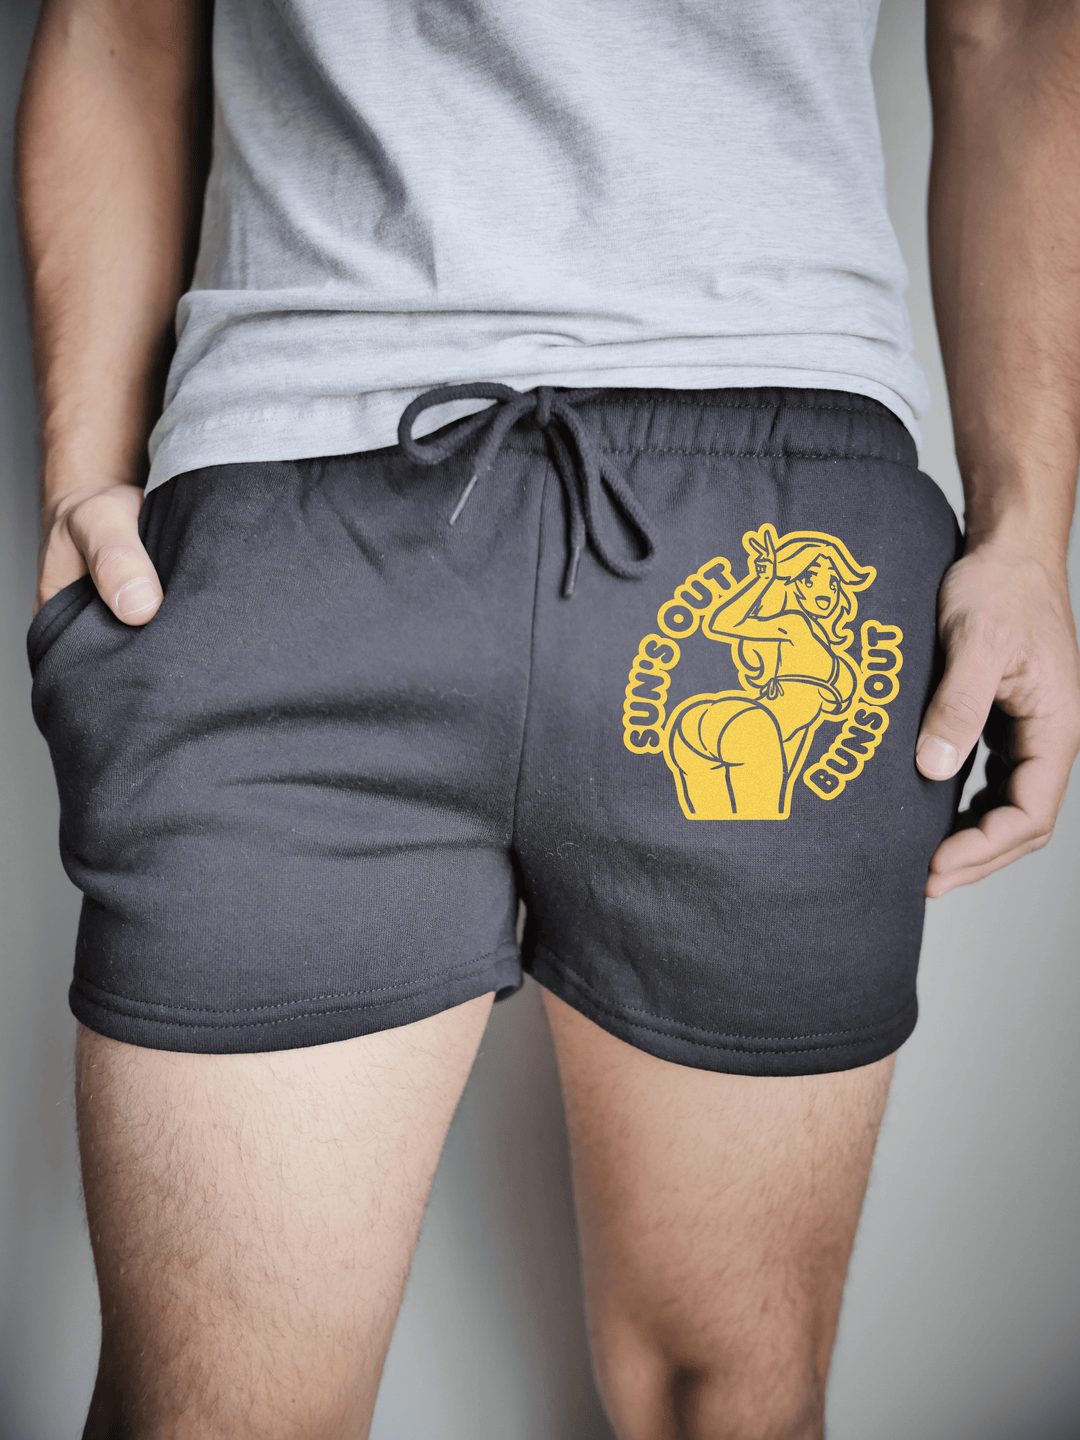 PixelThat Punderwear Shorts Black / S / Front Suns Out Buns Out Men's Gym Shorts